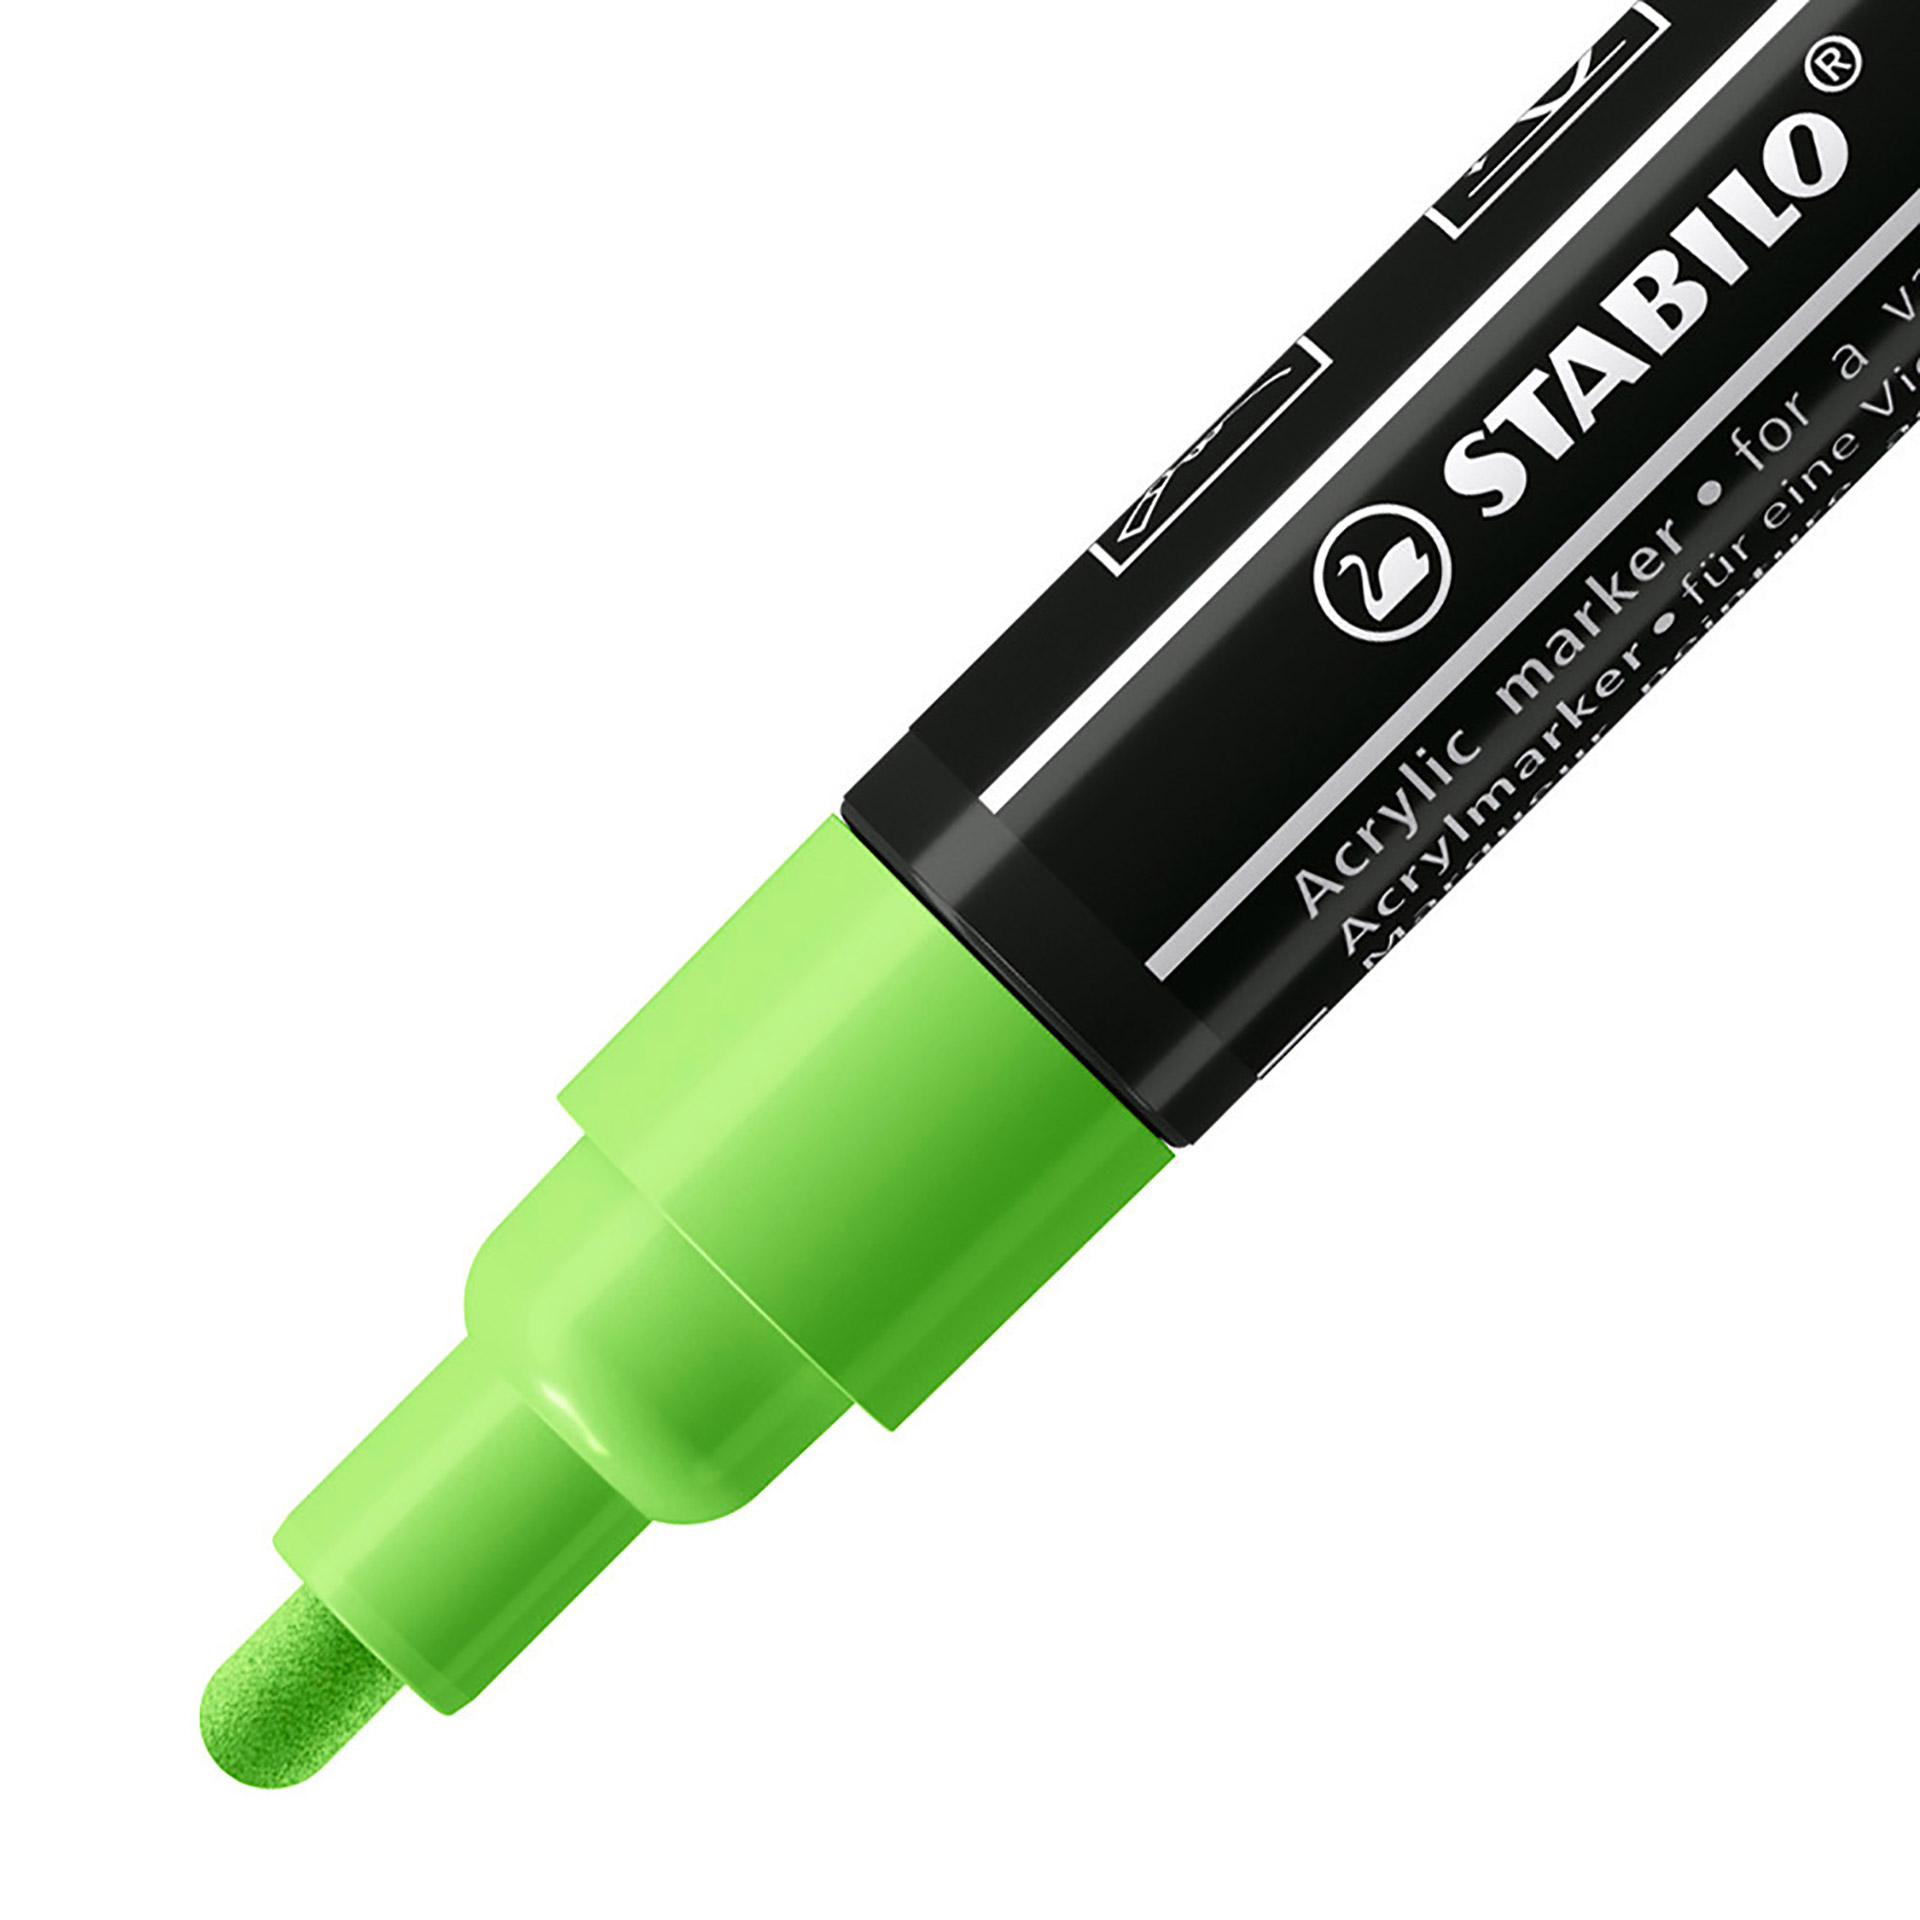 STABILO FREE Acrylic - T300 Punta rotonda 2-3mm - Confezione da 5 - Verde chiaro, , large